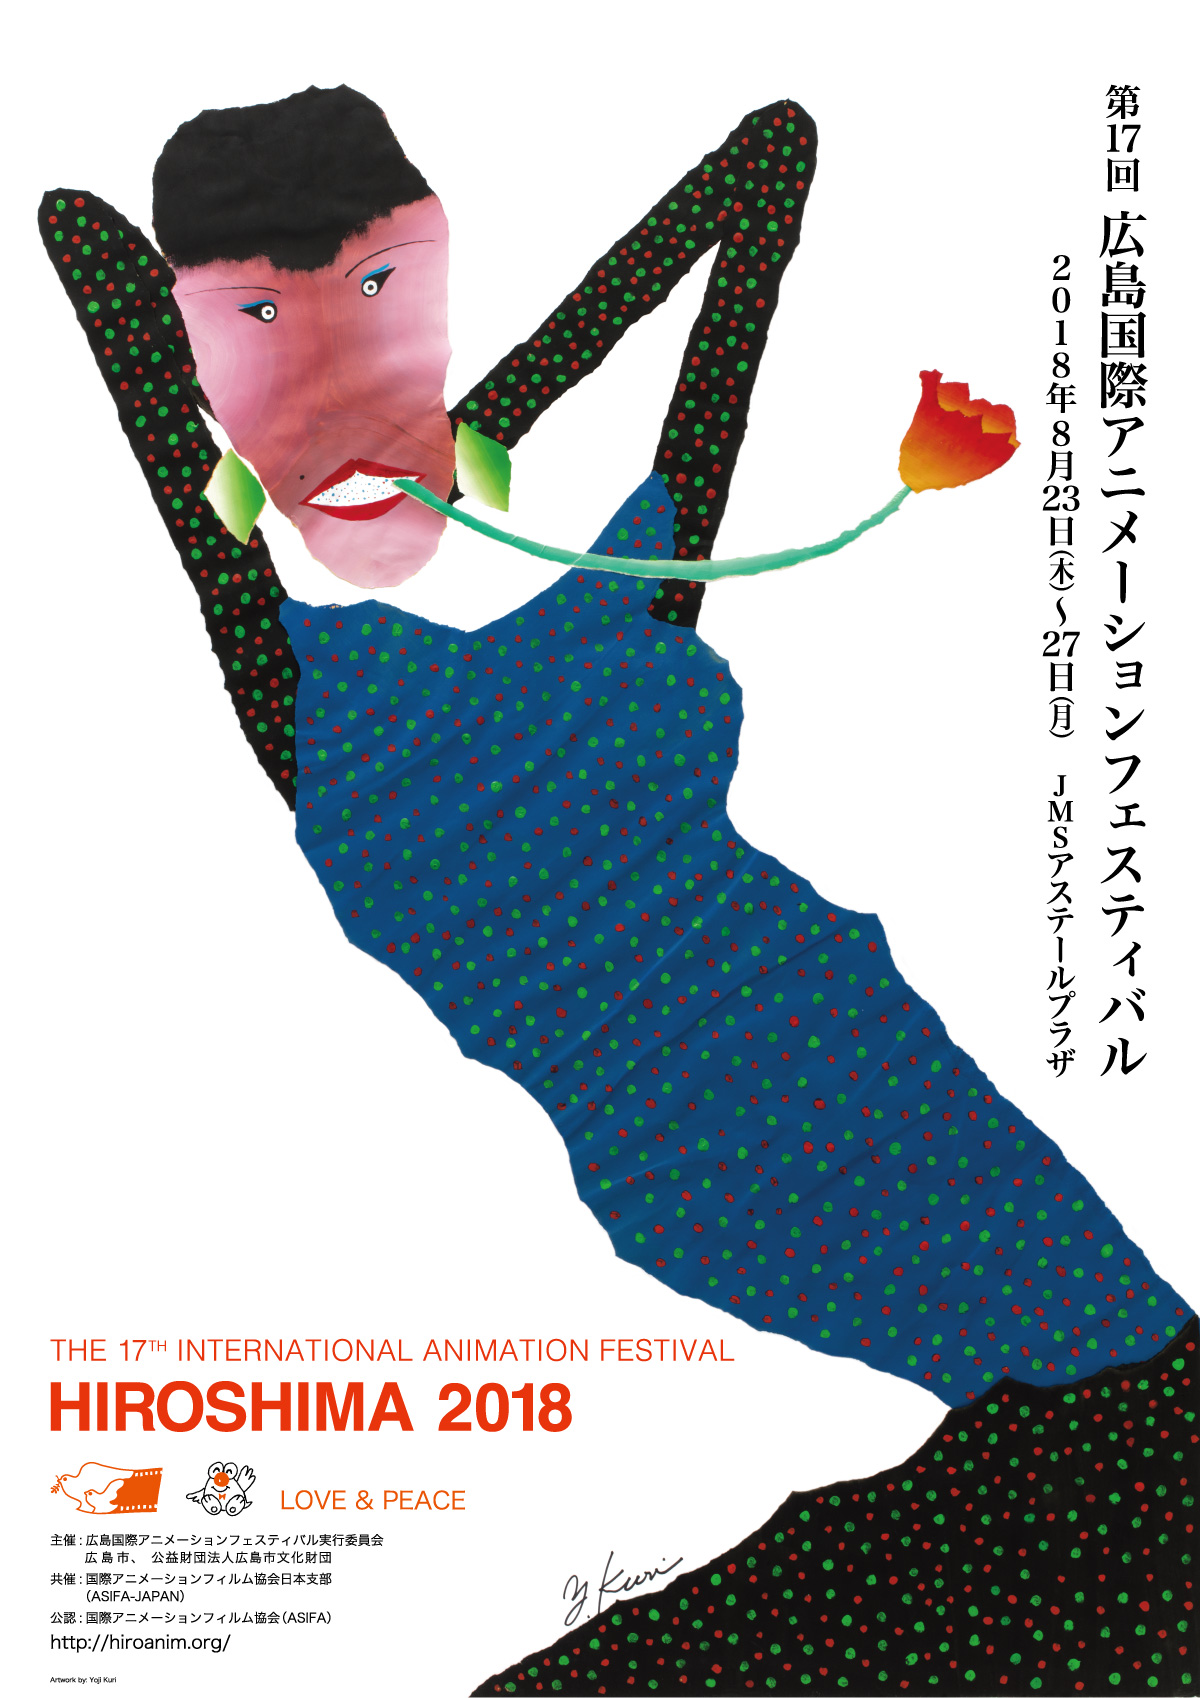 HIROSHIMA 2018 Poster